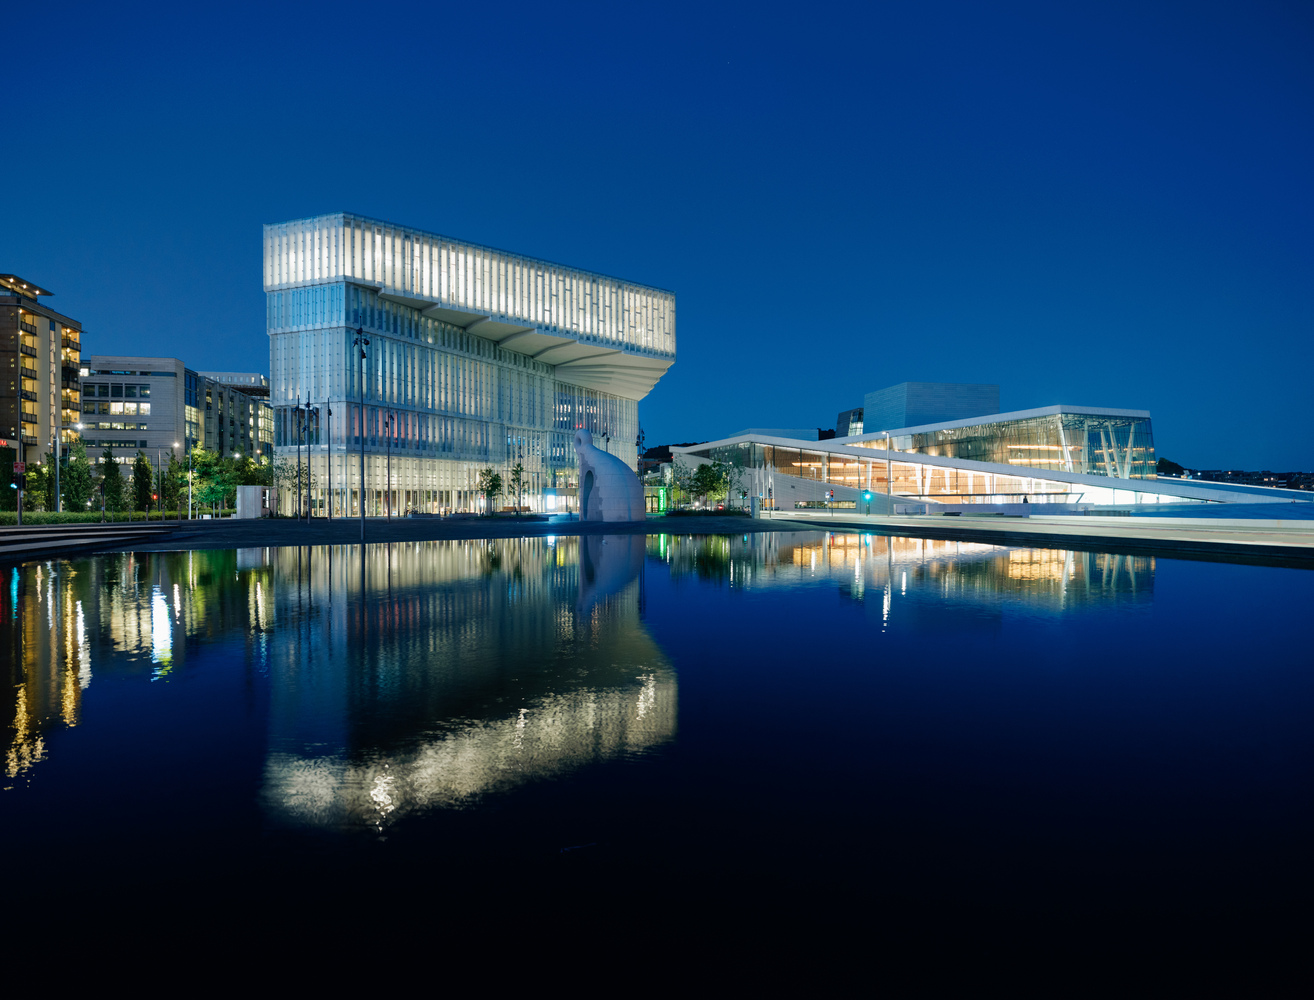 Oslos nya mötesplats är ett bibliotek, fyllt med liv och ljus